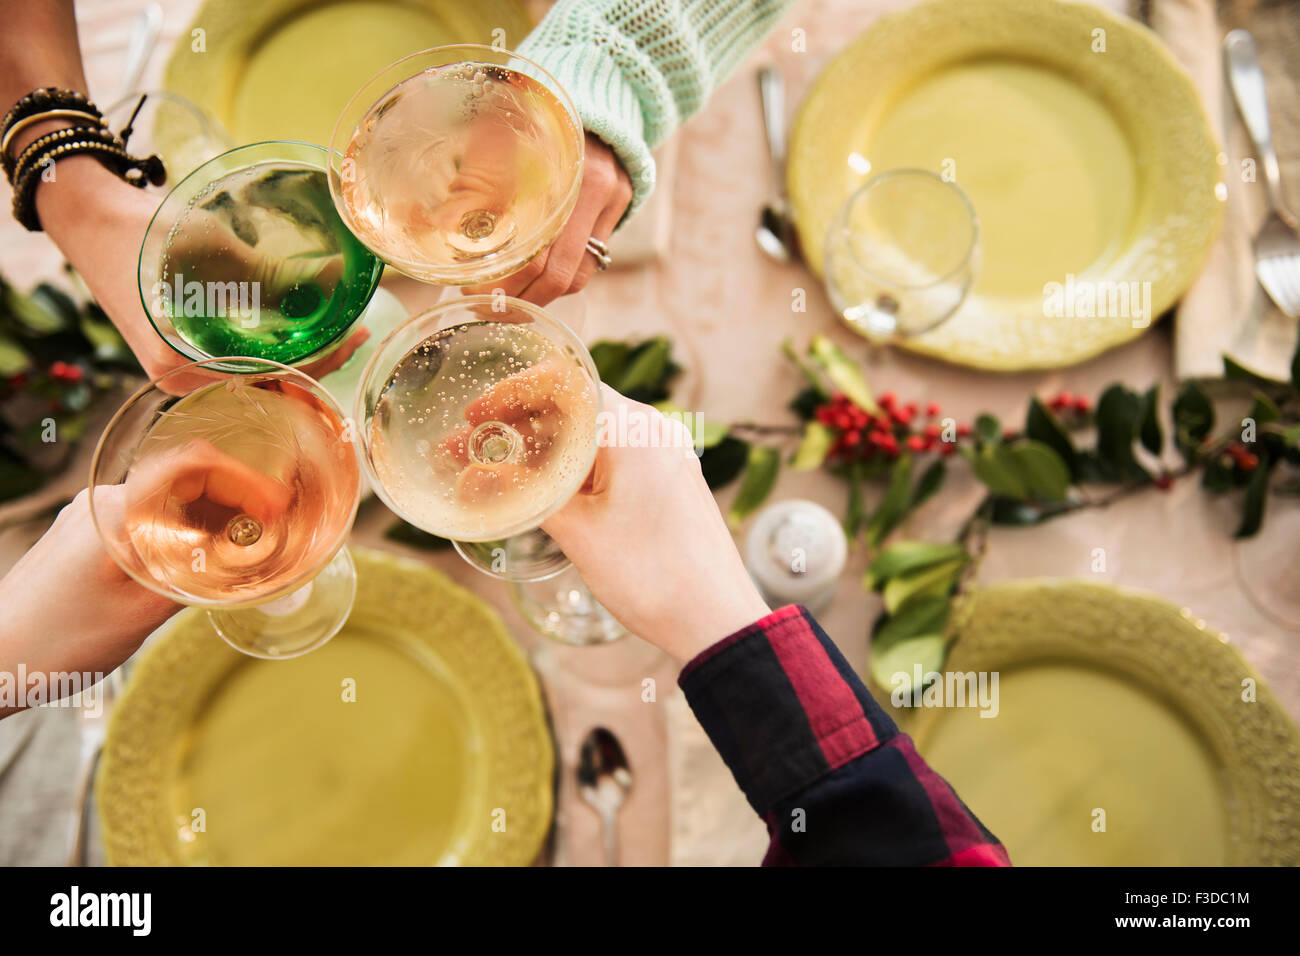 Persönliche Sicht von Menschen mit Martini-Gläser am festlich gedeckten Tisch Stockfoto